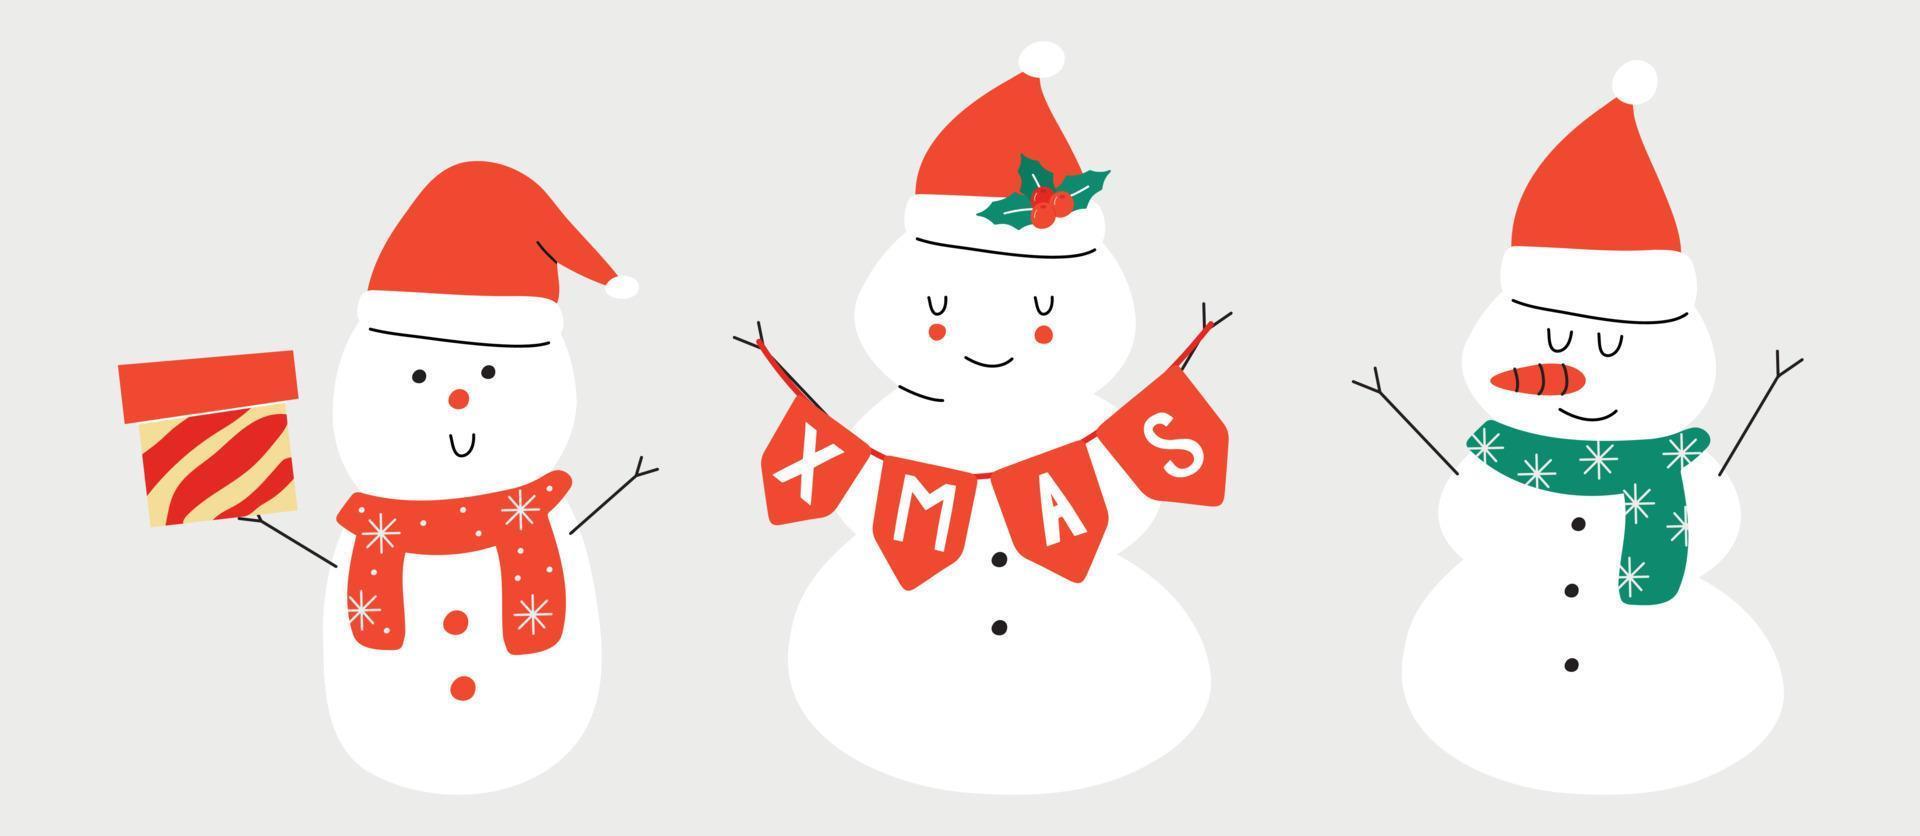 vektor hand gezeichnete winterillustration eines schneemannes mit einer karotte und einer weihnachtsmütze. Gestaltung von Grußkarten, Postern, Geschenkverpackungen.